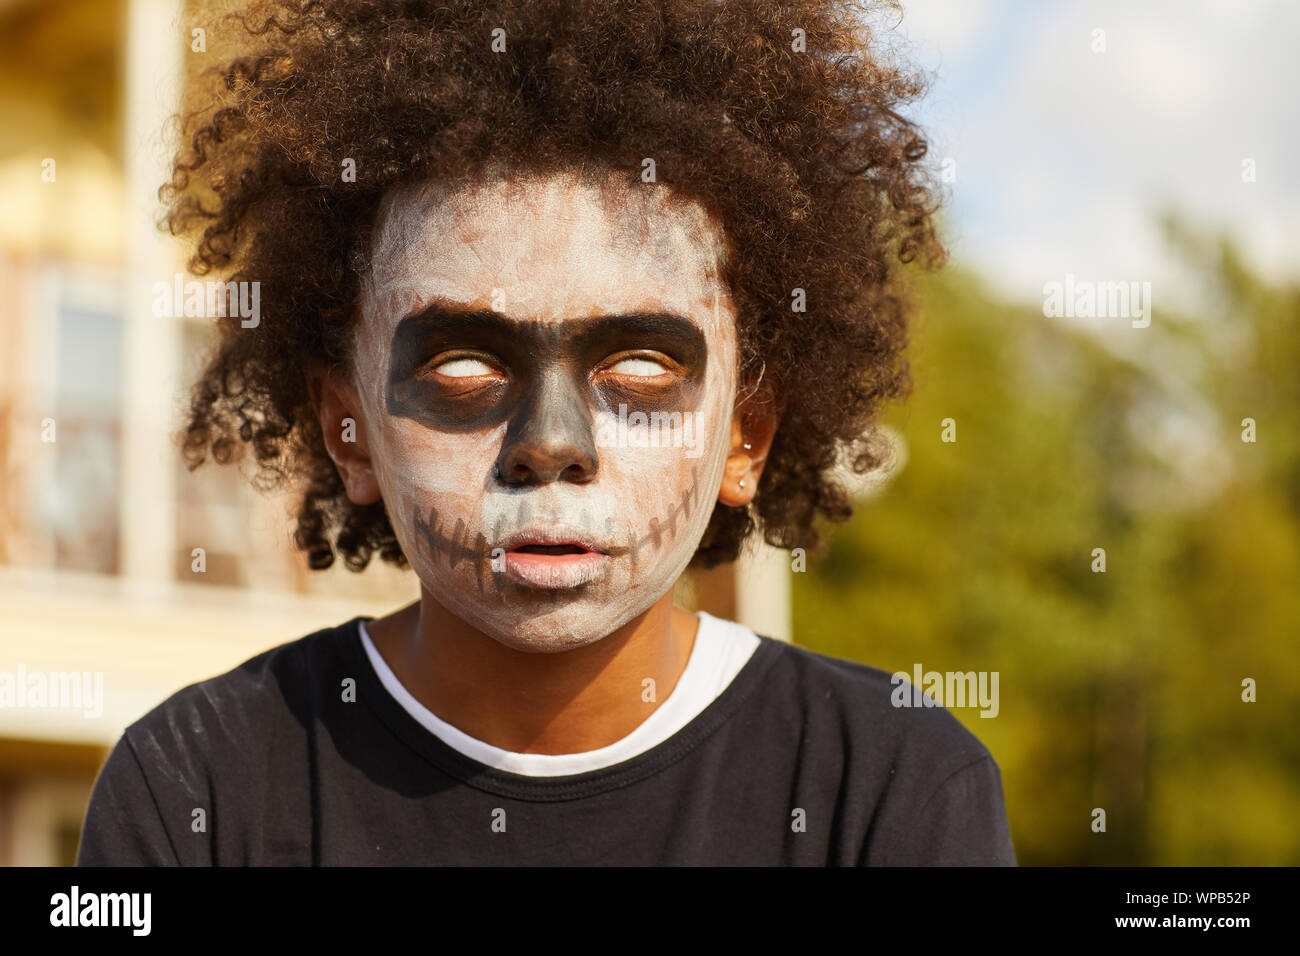 Kopf und Schultern Porträt des Afrikaners - kaufen Sie tragen gruselige Skelett Kostüm posiert im Freien auf Halloween durch Sonnenlicht beleuchtet, kopieren Raum Stockfoto